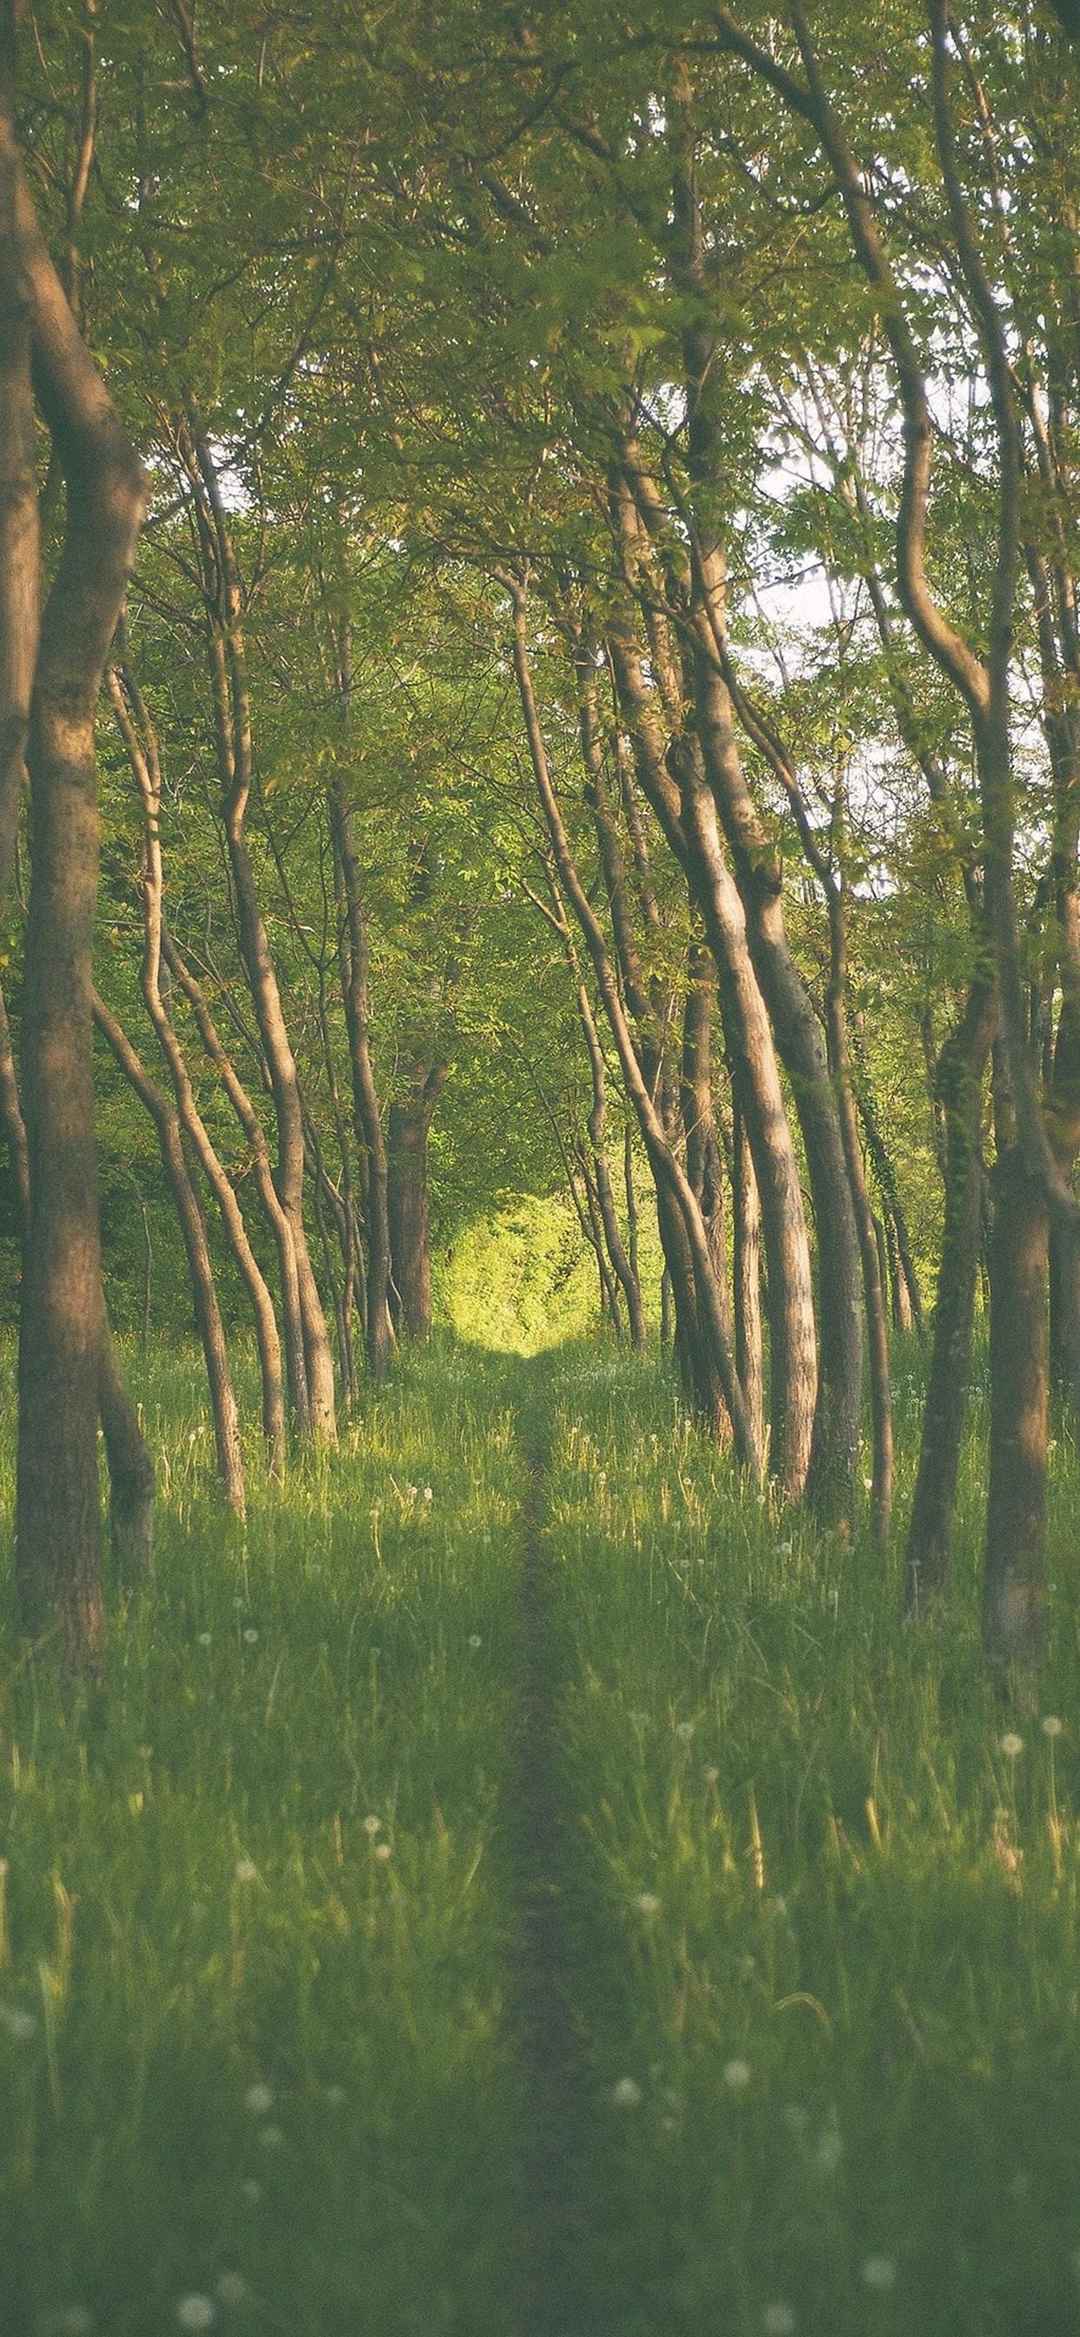 自然森林风景摄影8k极清竖屏手机壁纸-